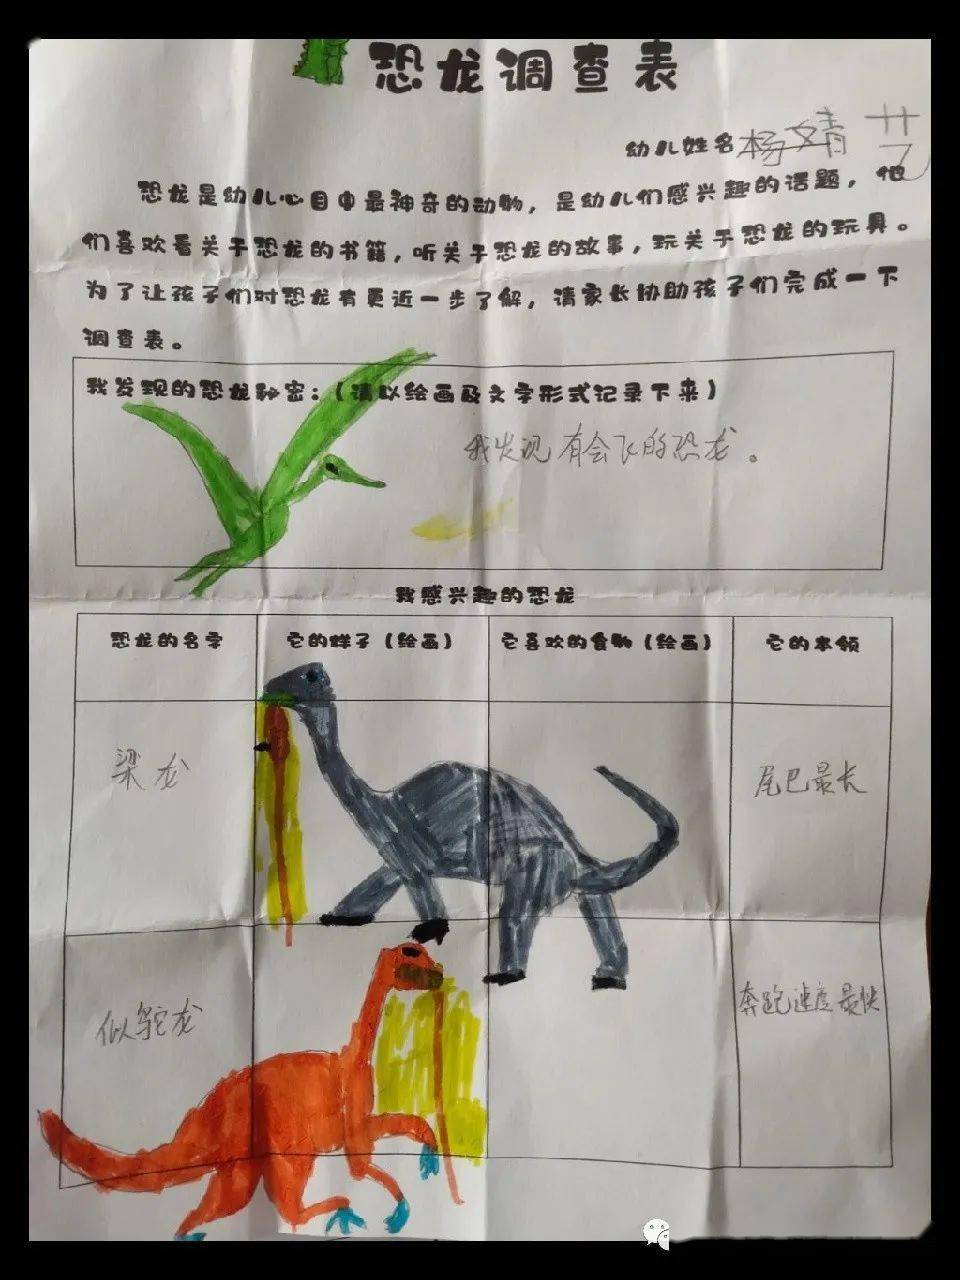 恐龙档案卡内容图片